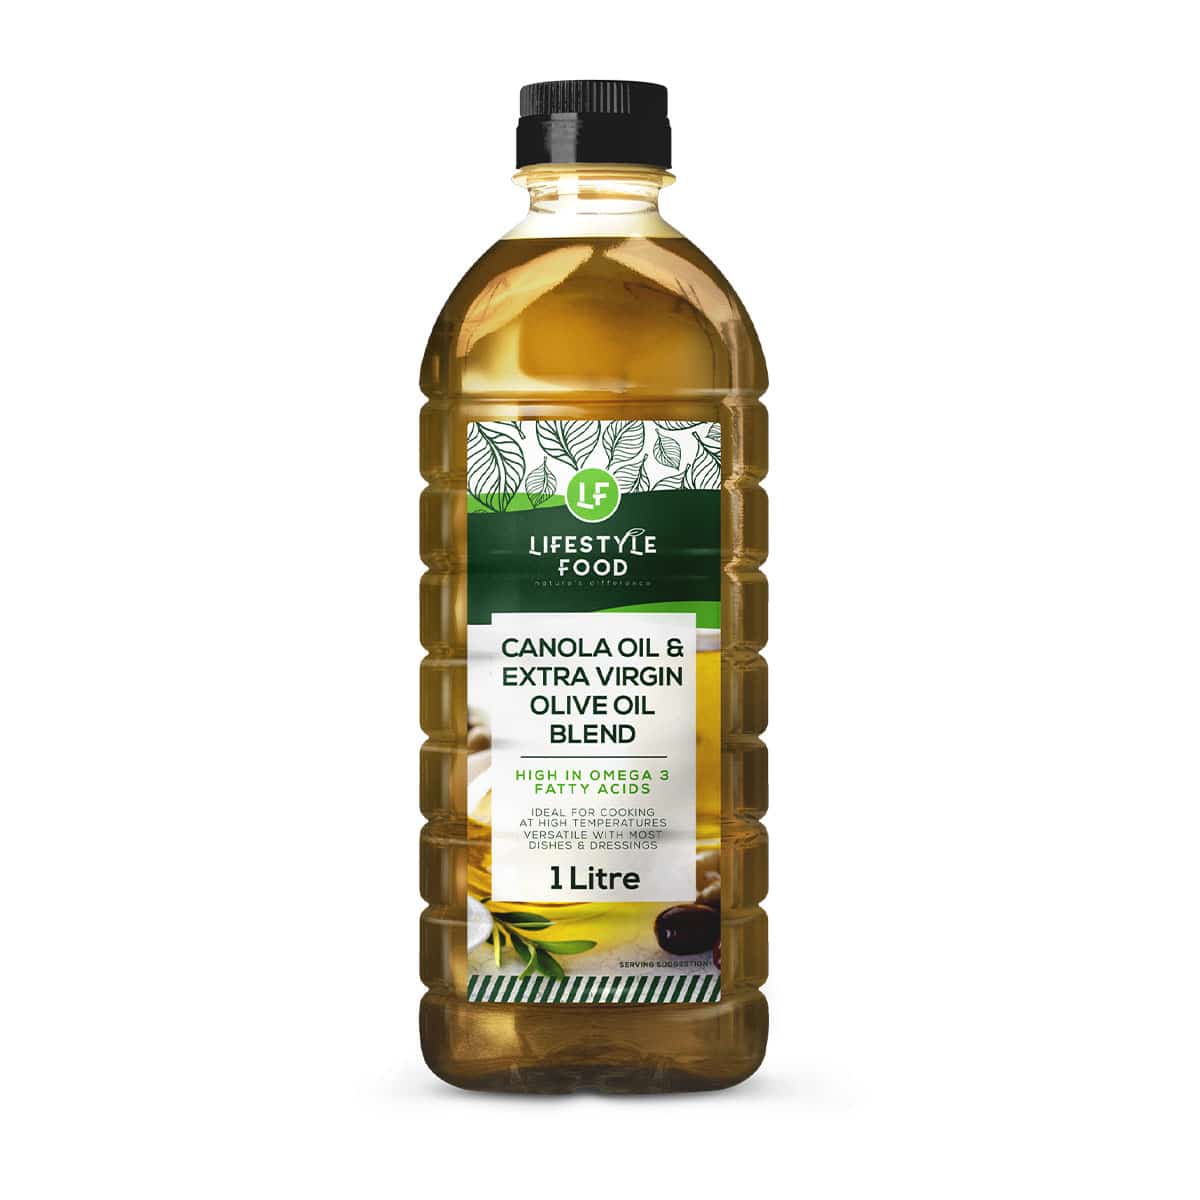 Lifestyle Food Canola Oil & Extra Virgin Olive Oil Blend - 1 Litre